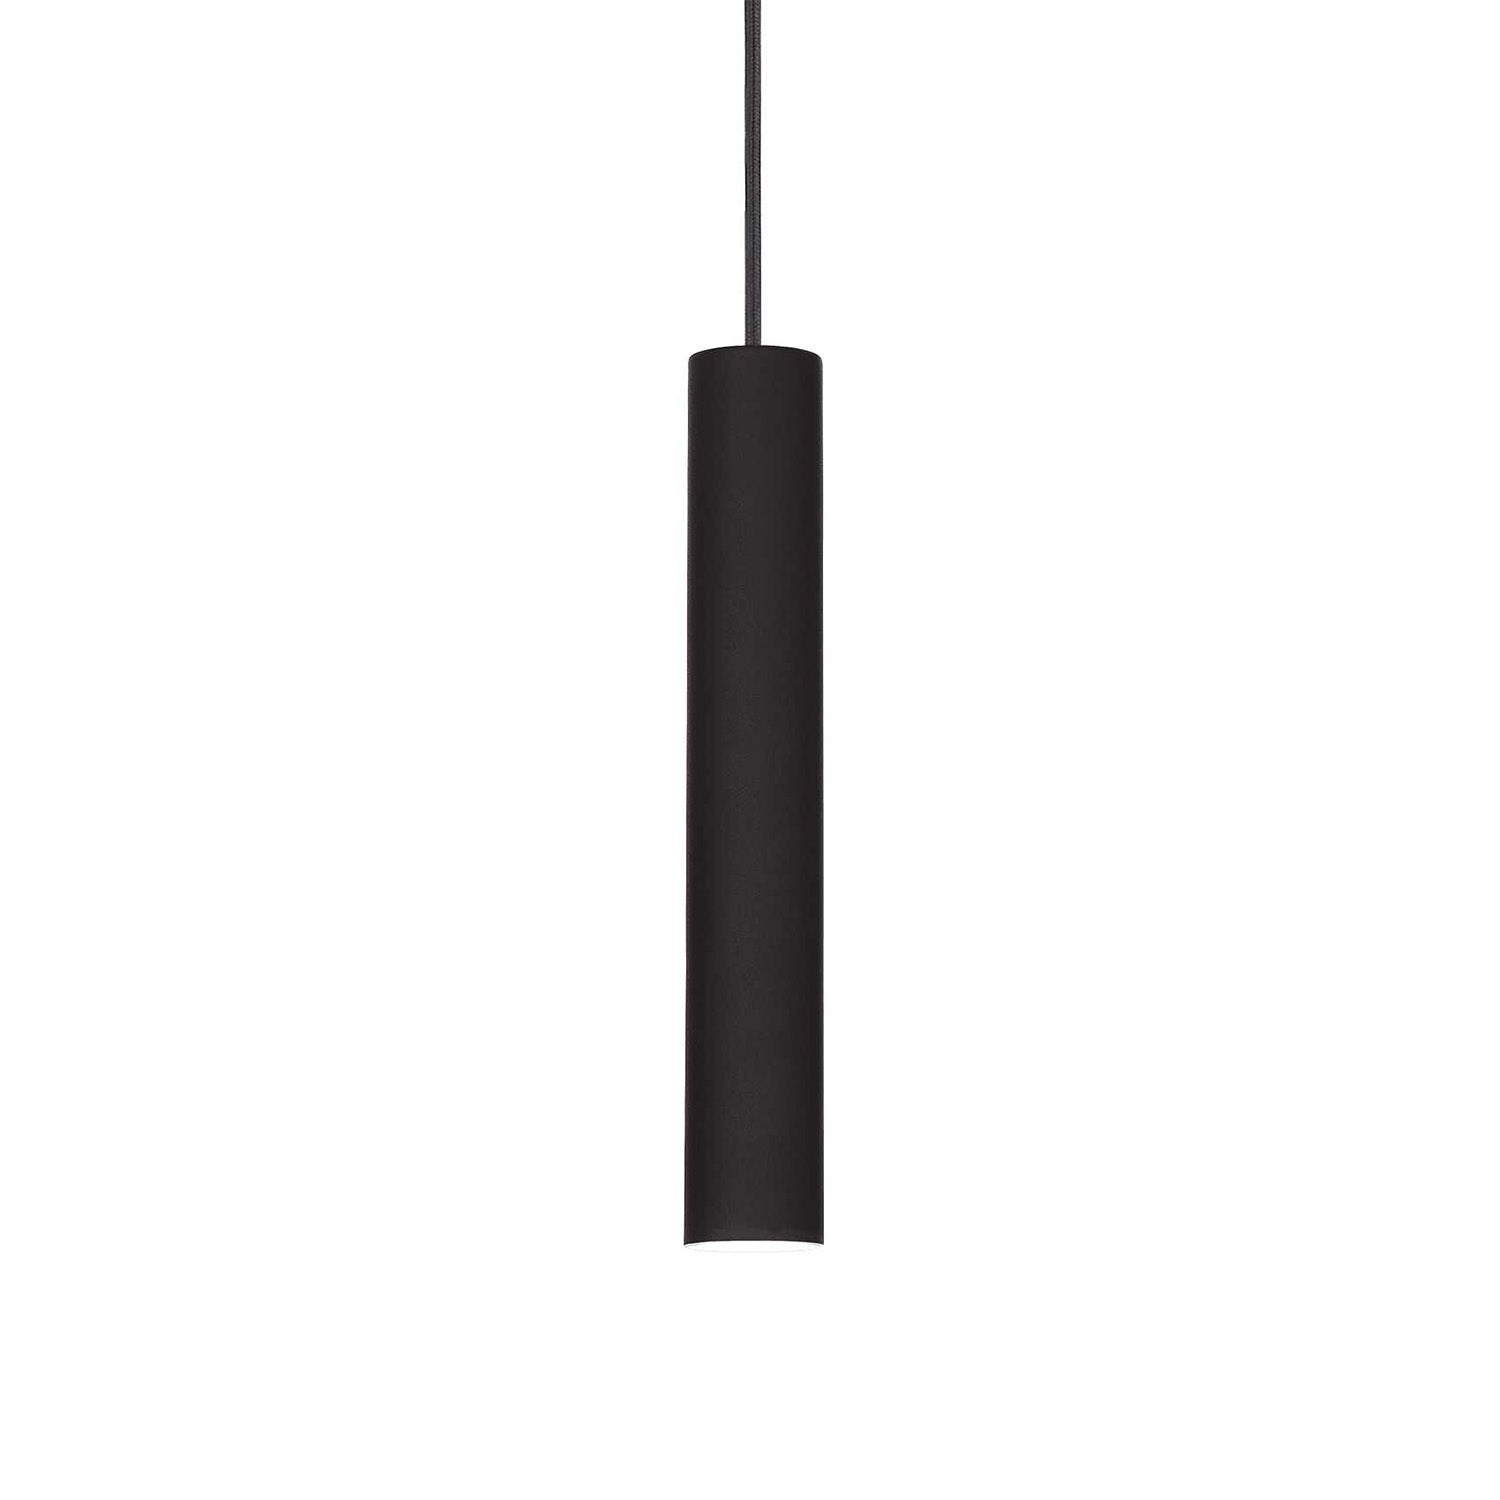 TUBE – Integrierte LED-Röhren-Pendelleuchte aus schwarzem oder weißem Stahl